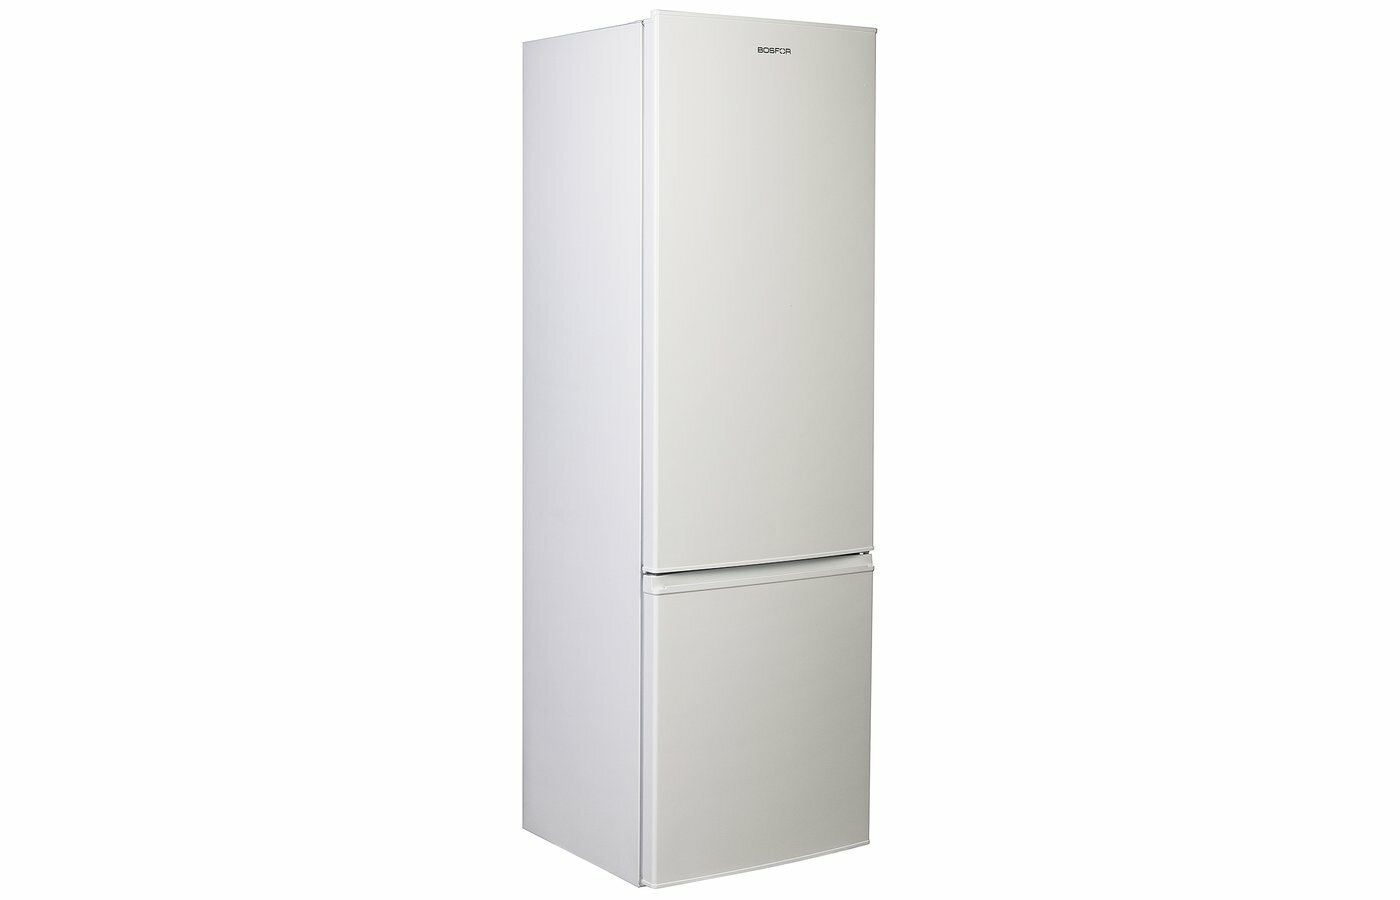 Холодильник Bosfor BRF 180 WS LF